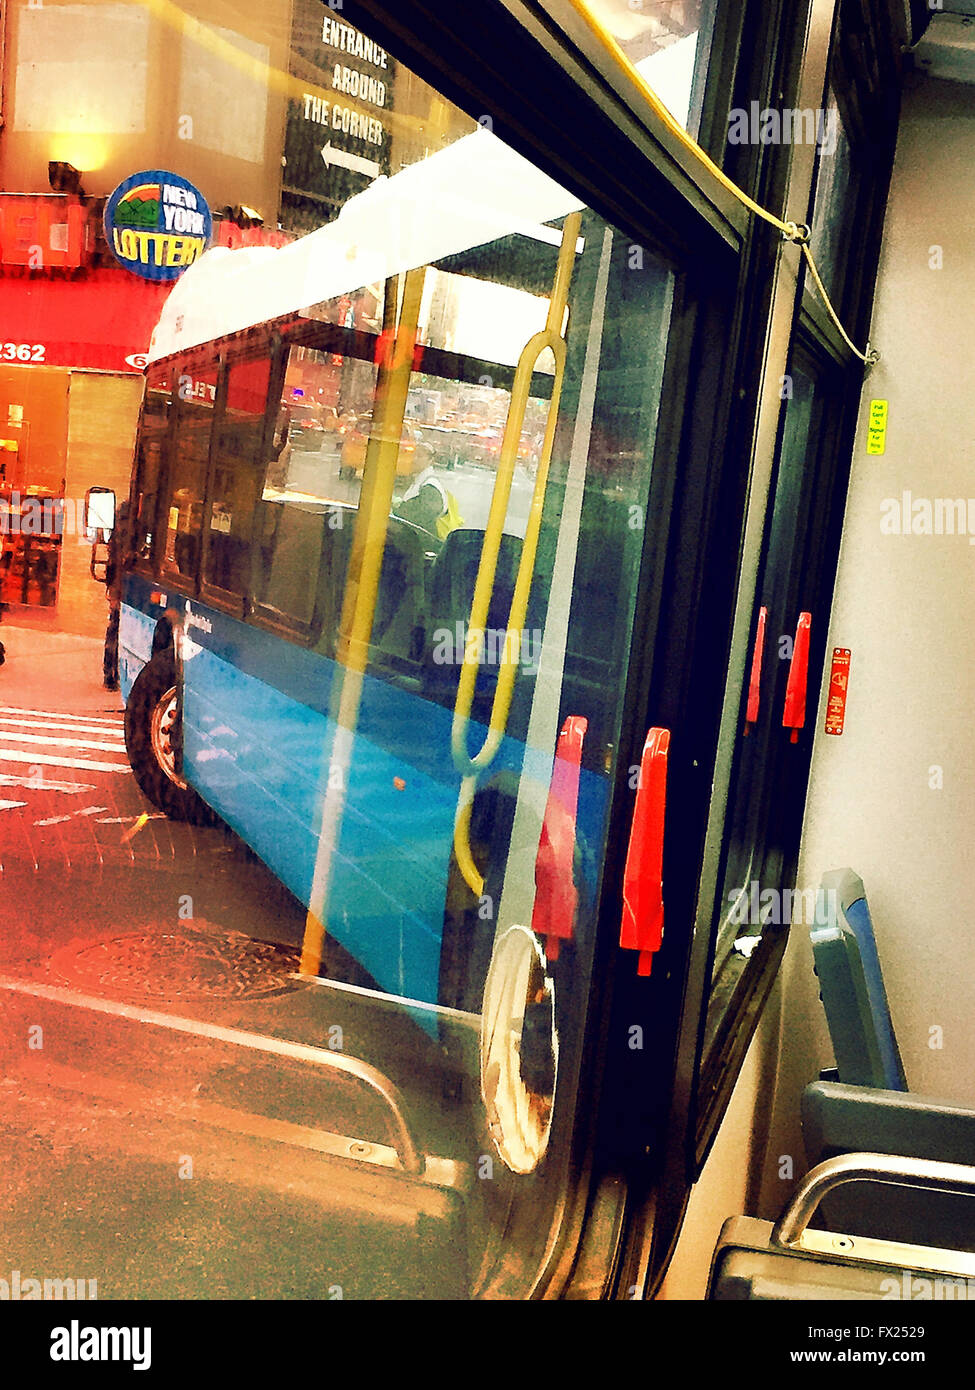 Articolato New York City Transit Bus girando a sinistra per una strada di città, NYC, STATI UNITI D'AMERICA Foto Stock